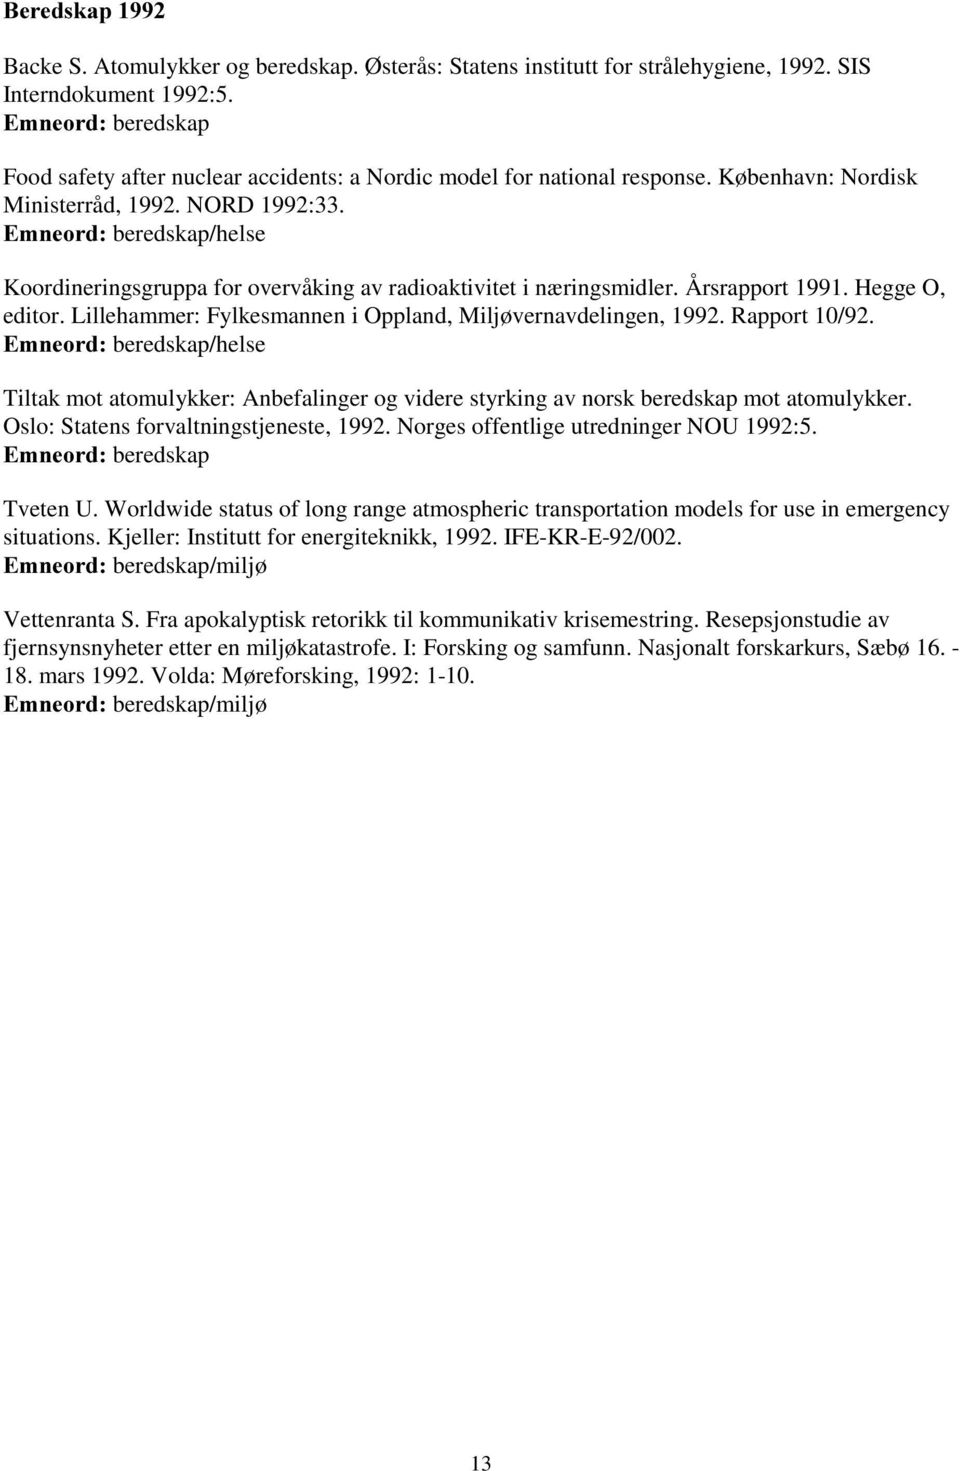 Lillehammer: Fylkesmannen i Oppland, Miljøvernavdelingen, 1992. Rapport 10/92. /helse Tiltak mot atomulykker: Anbefalinger og videre styrking av norsk beredskap mot atomulykker.